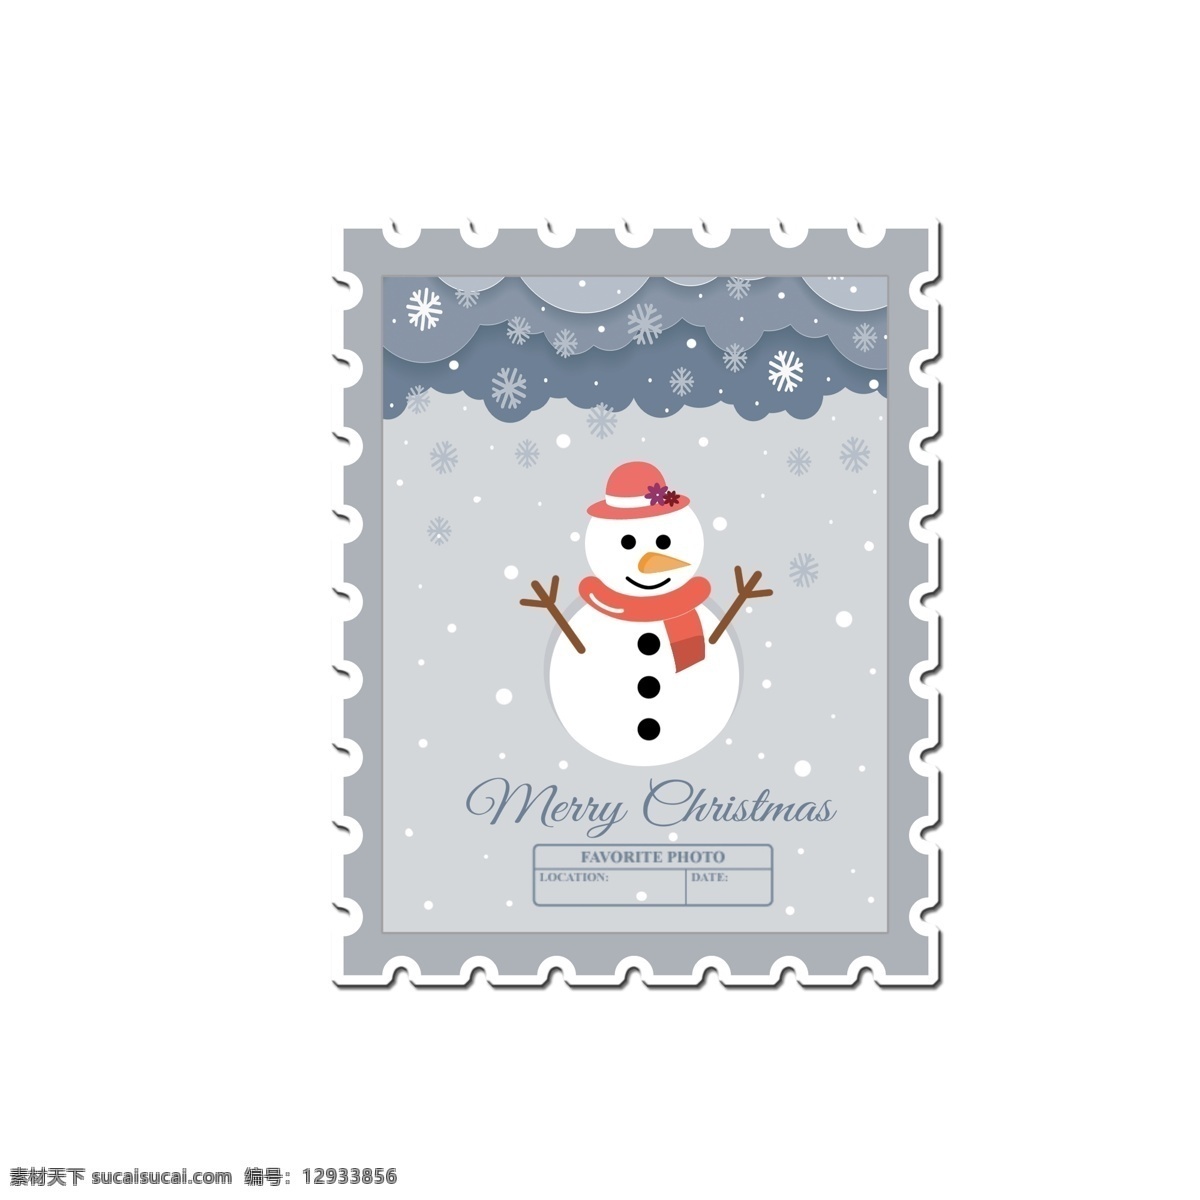 手绘 卡通 圣诞节 邮票 贴纸 手绘雪人 卡通可爱 小清新 创意贴纸 手绘邮票 邮票贴纸